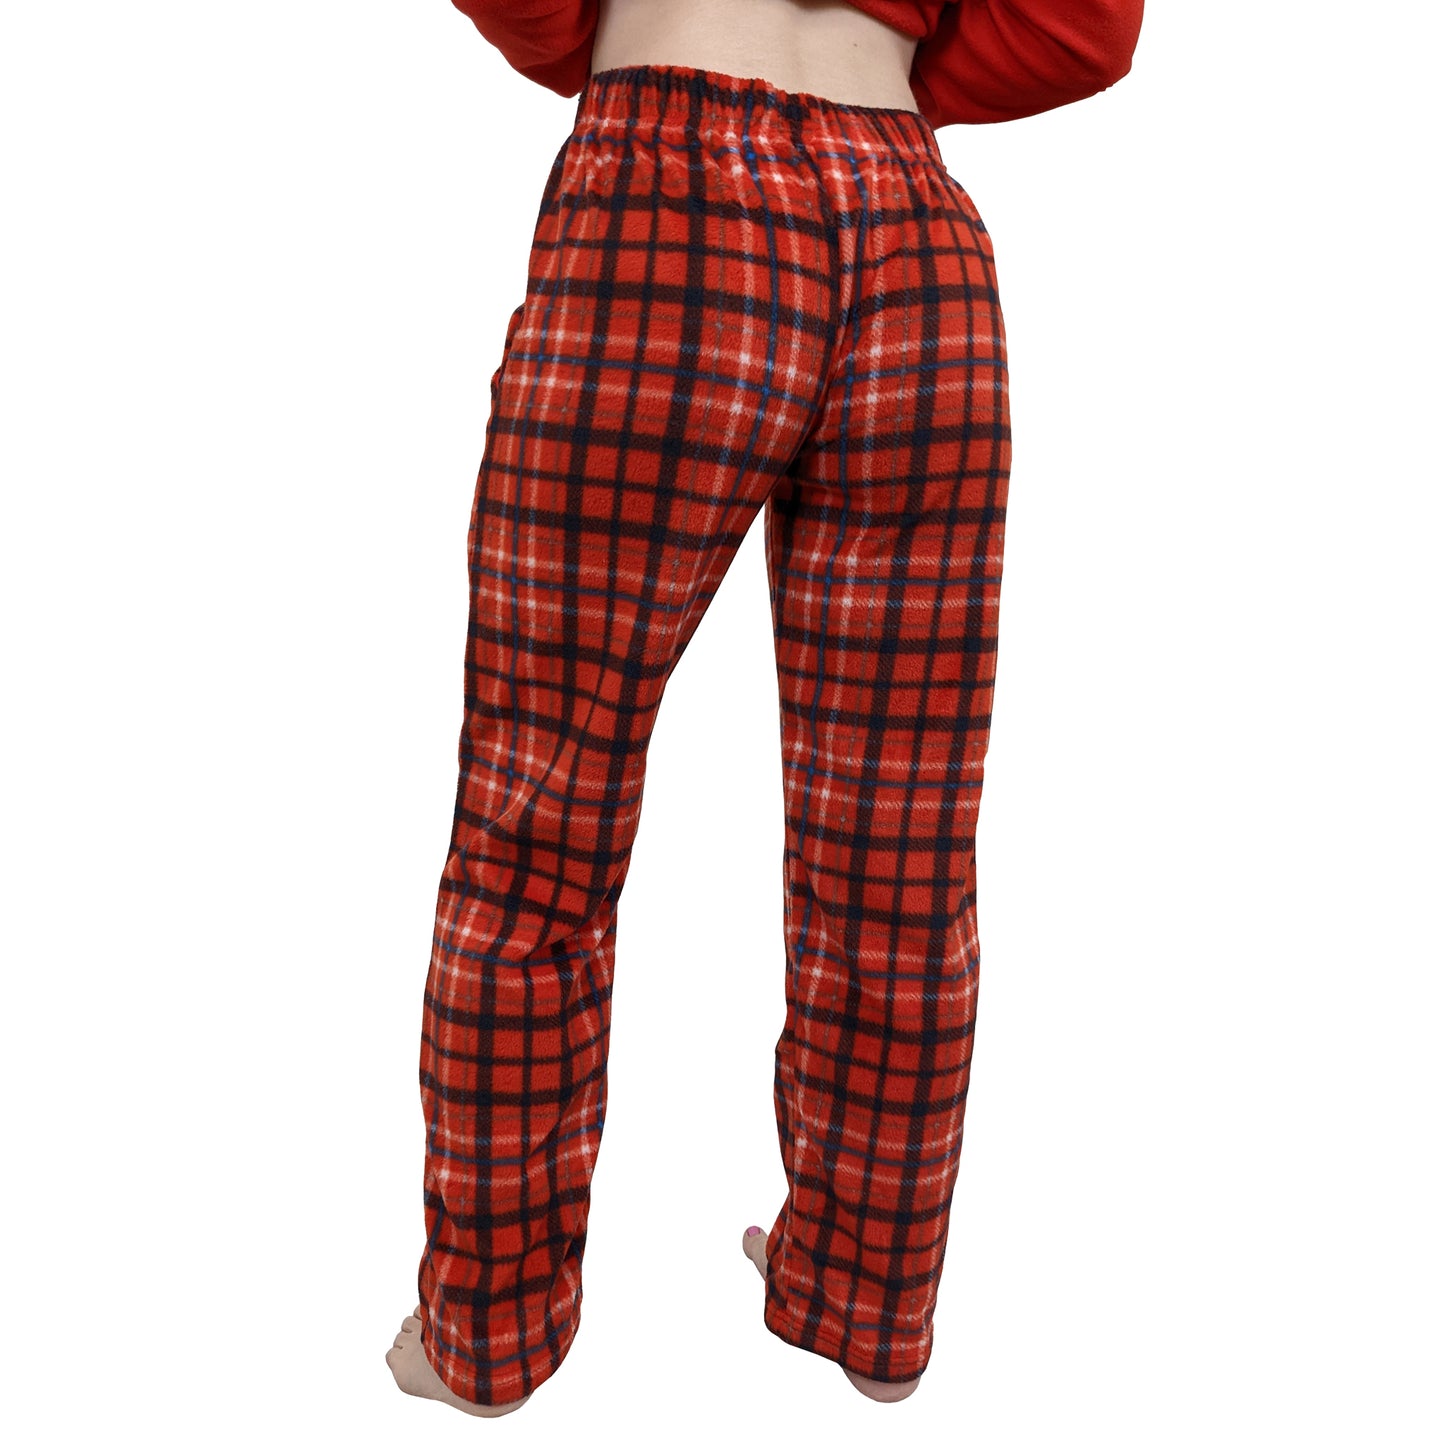 Aeryn Fleece Womens Pyjamas/Loungewear Set Sleepwear & Loungewear ASASonline